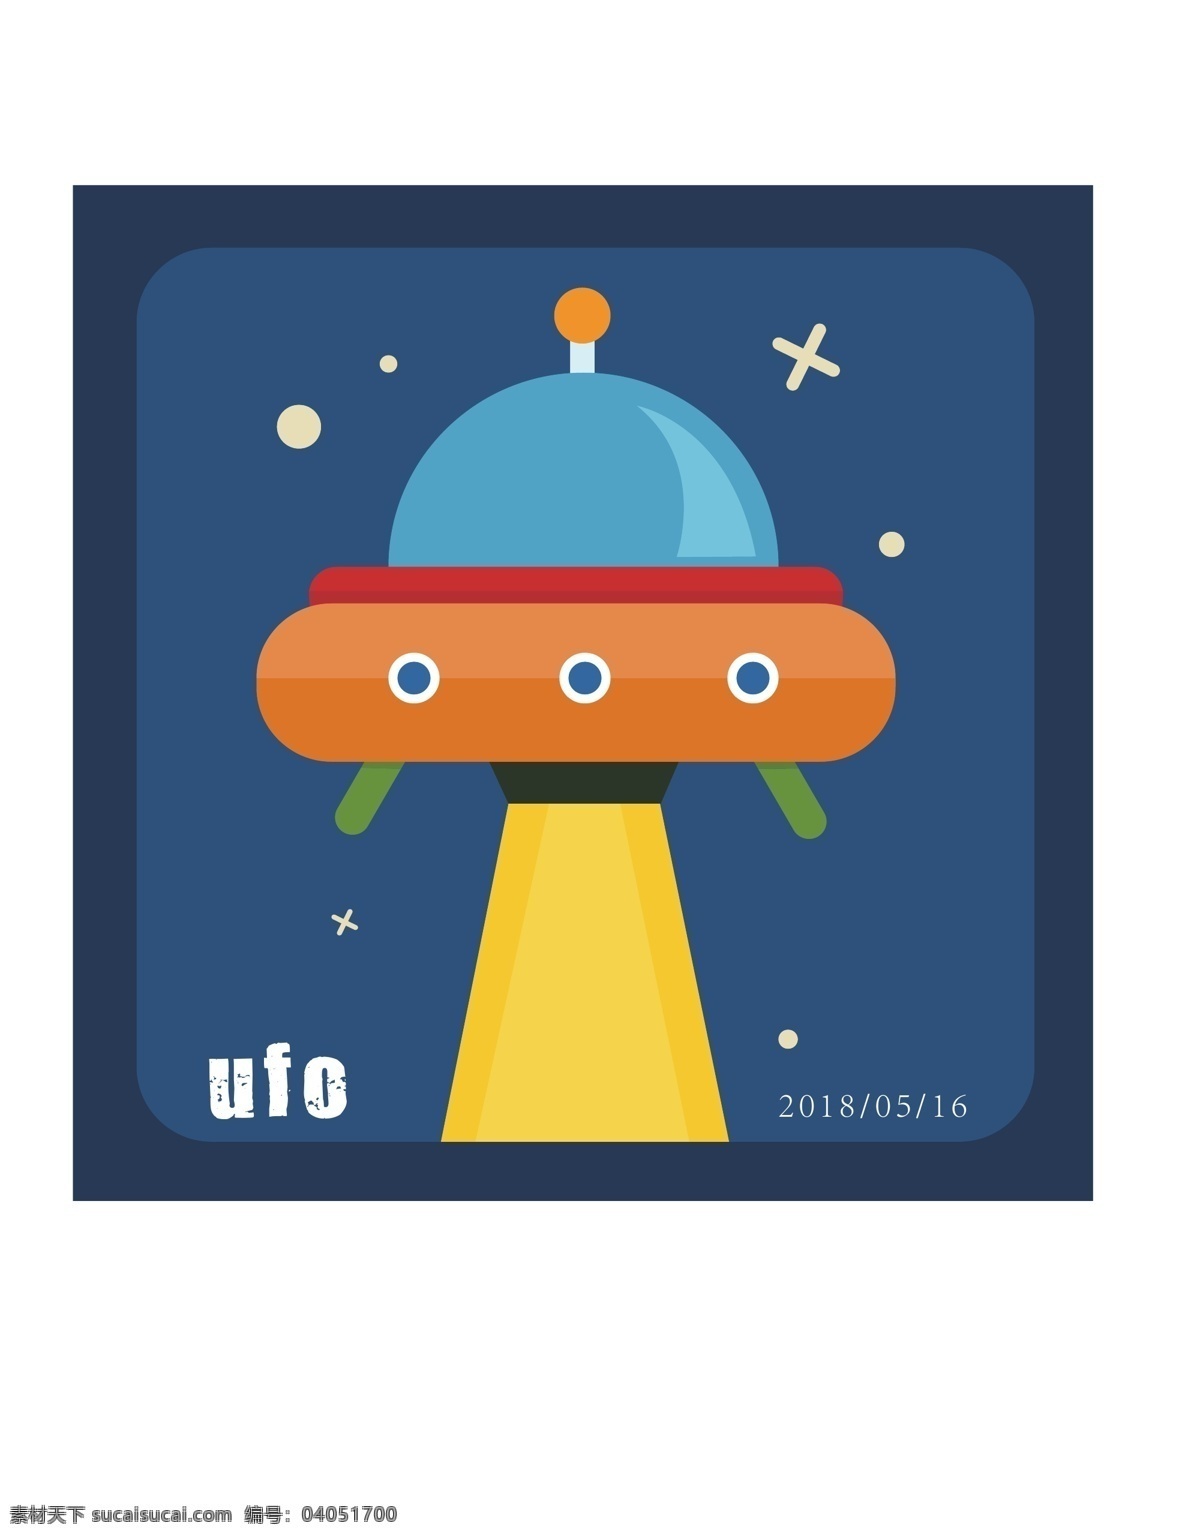 ufo飞船 飞船 ufo 卡通 扁平 飞碟 元素设计 动漫动画 动漫人物